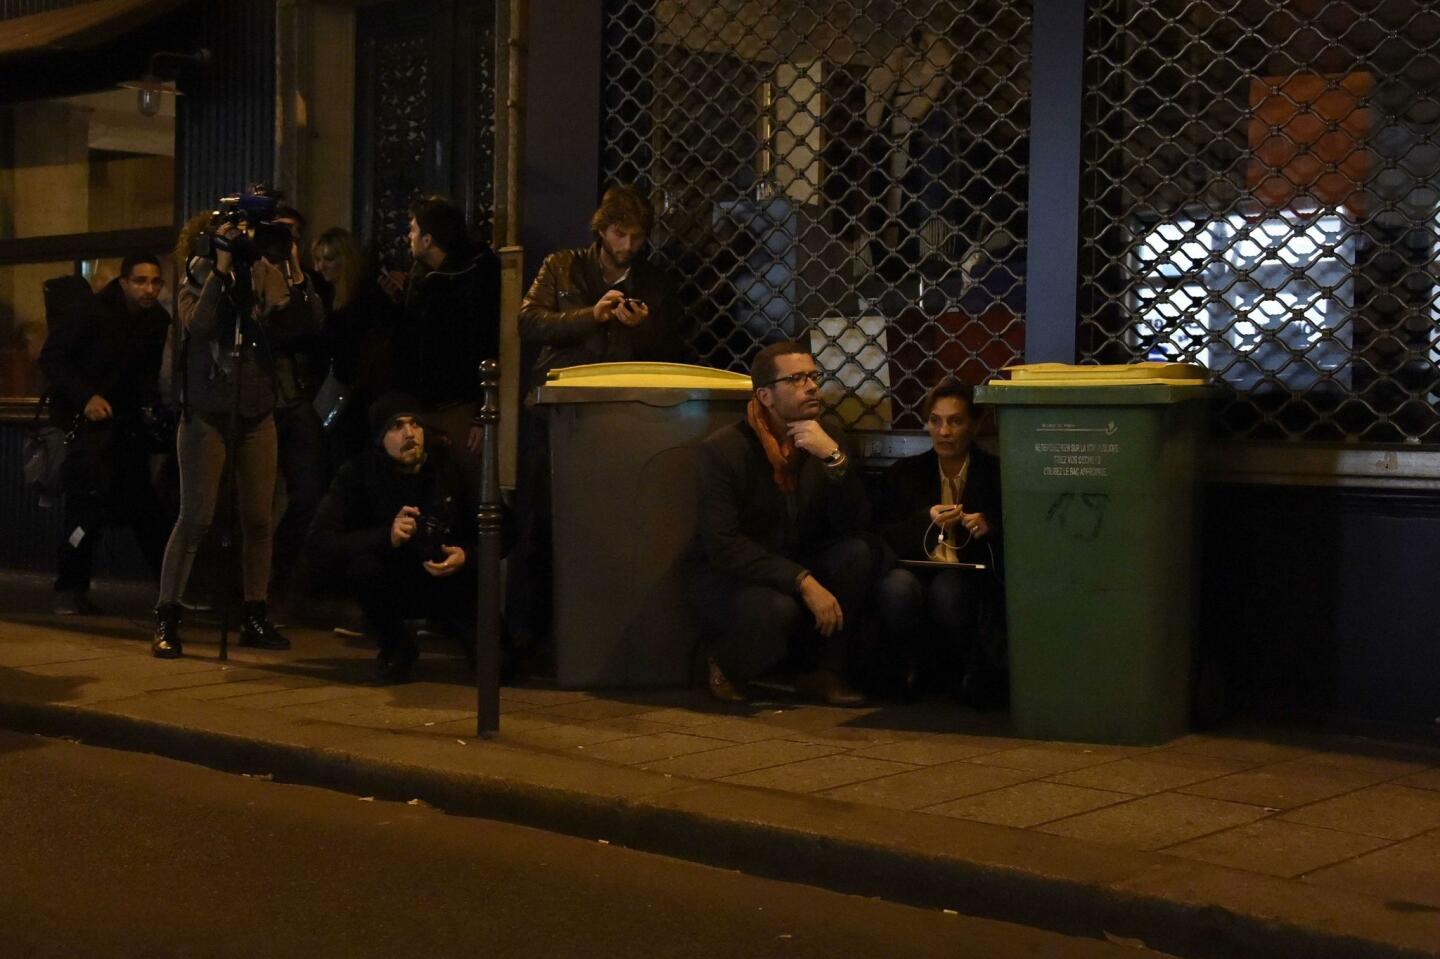 Images of Paris under attack